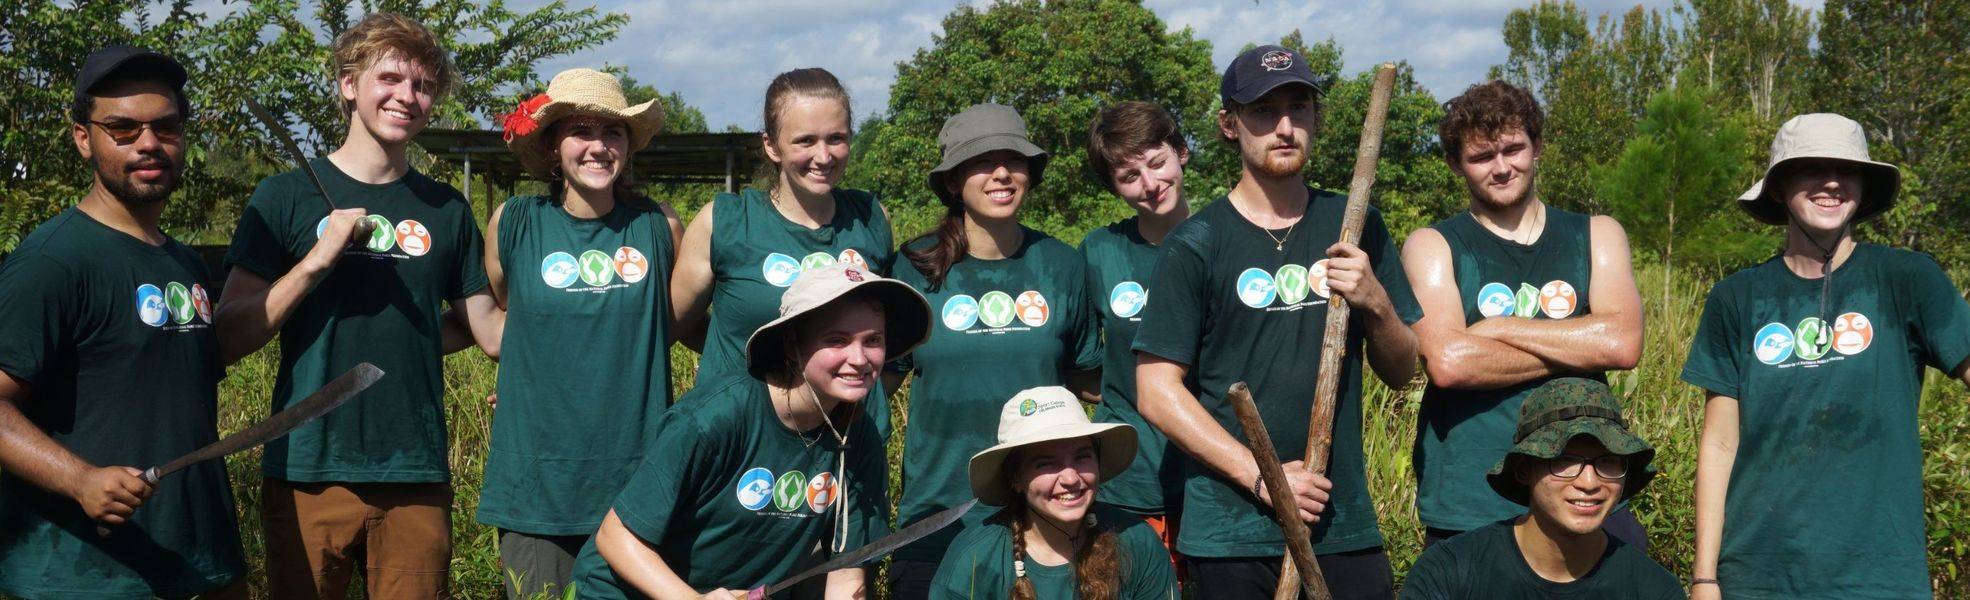 Volunteers bei ihrer Freiwilligenarbeit im Naturschutz - Tätigkeitsbereiche